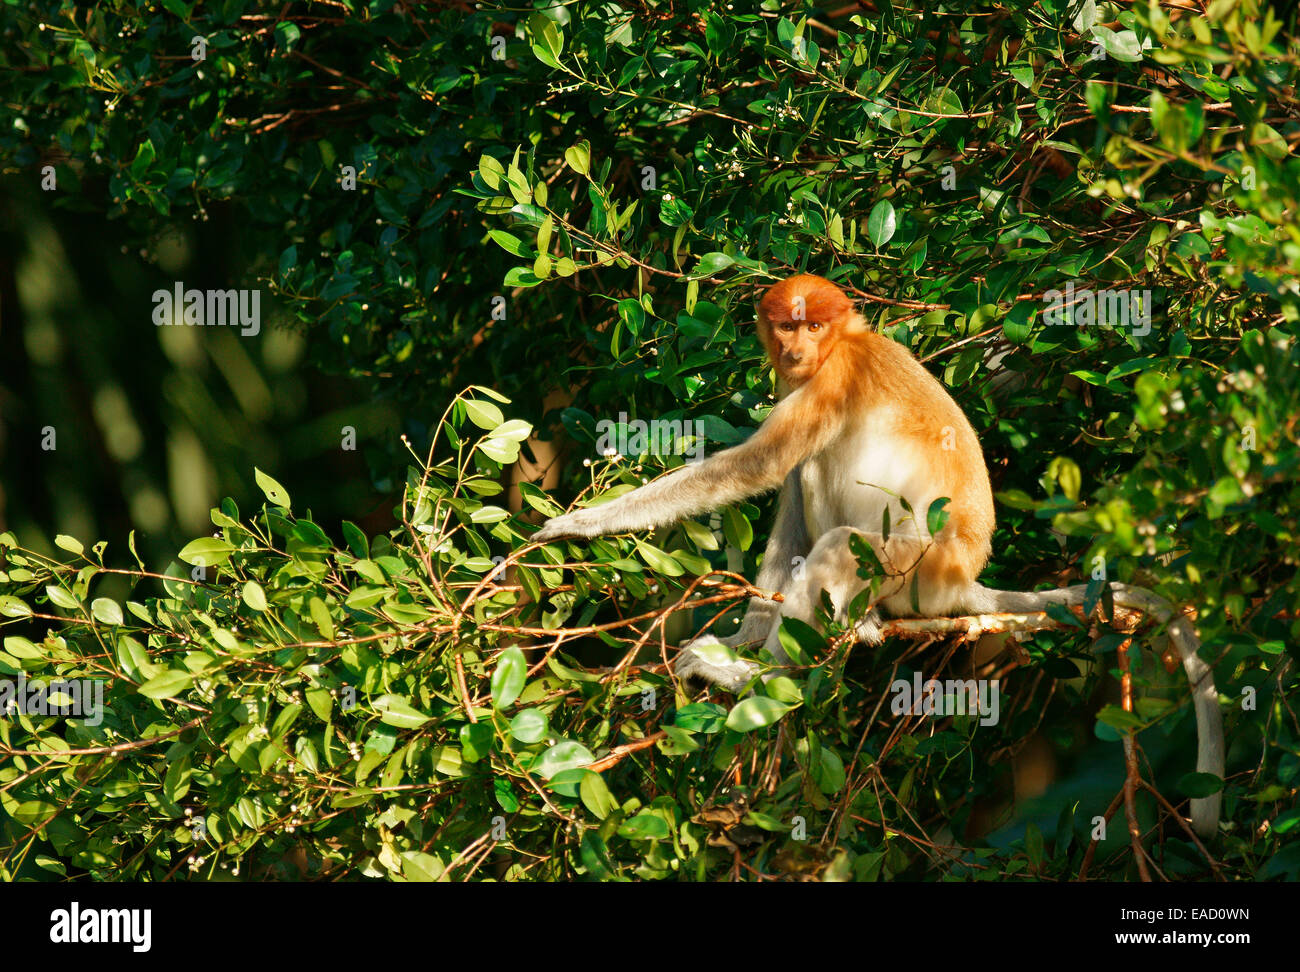 Proboscis Monkey (Nasalis larvatus), femme, parc national de Tanjung Puting, centre de Kalimantan, Bornéo, Indonésie Banque D'Images